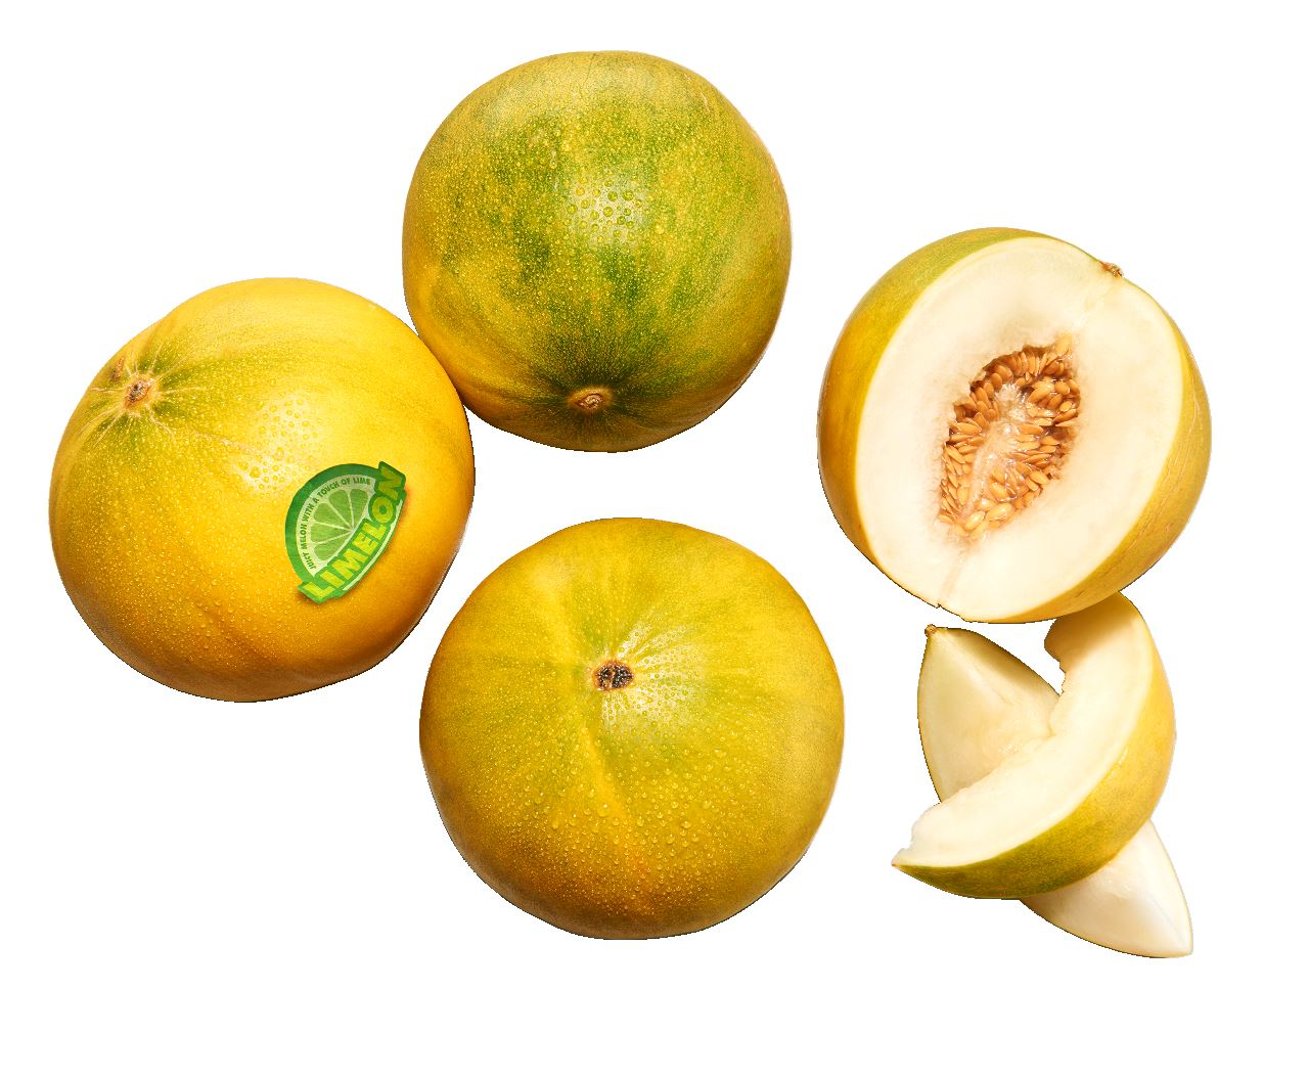 Limelon Melone Spanien - 4 x 1 kg Kiste